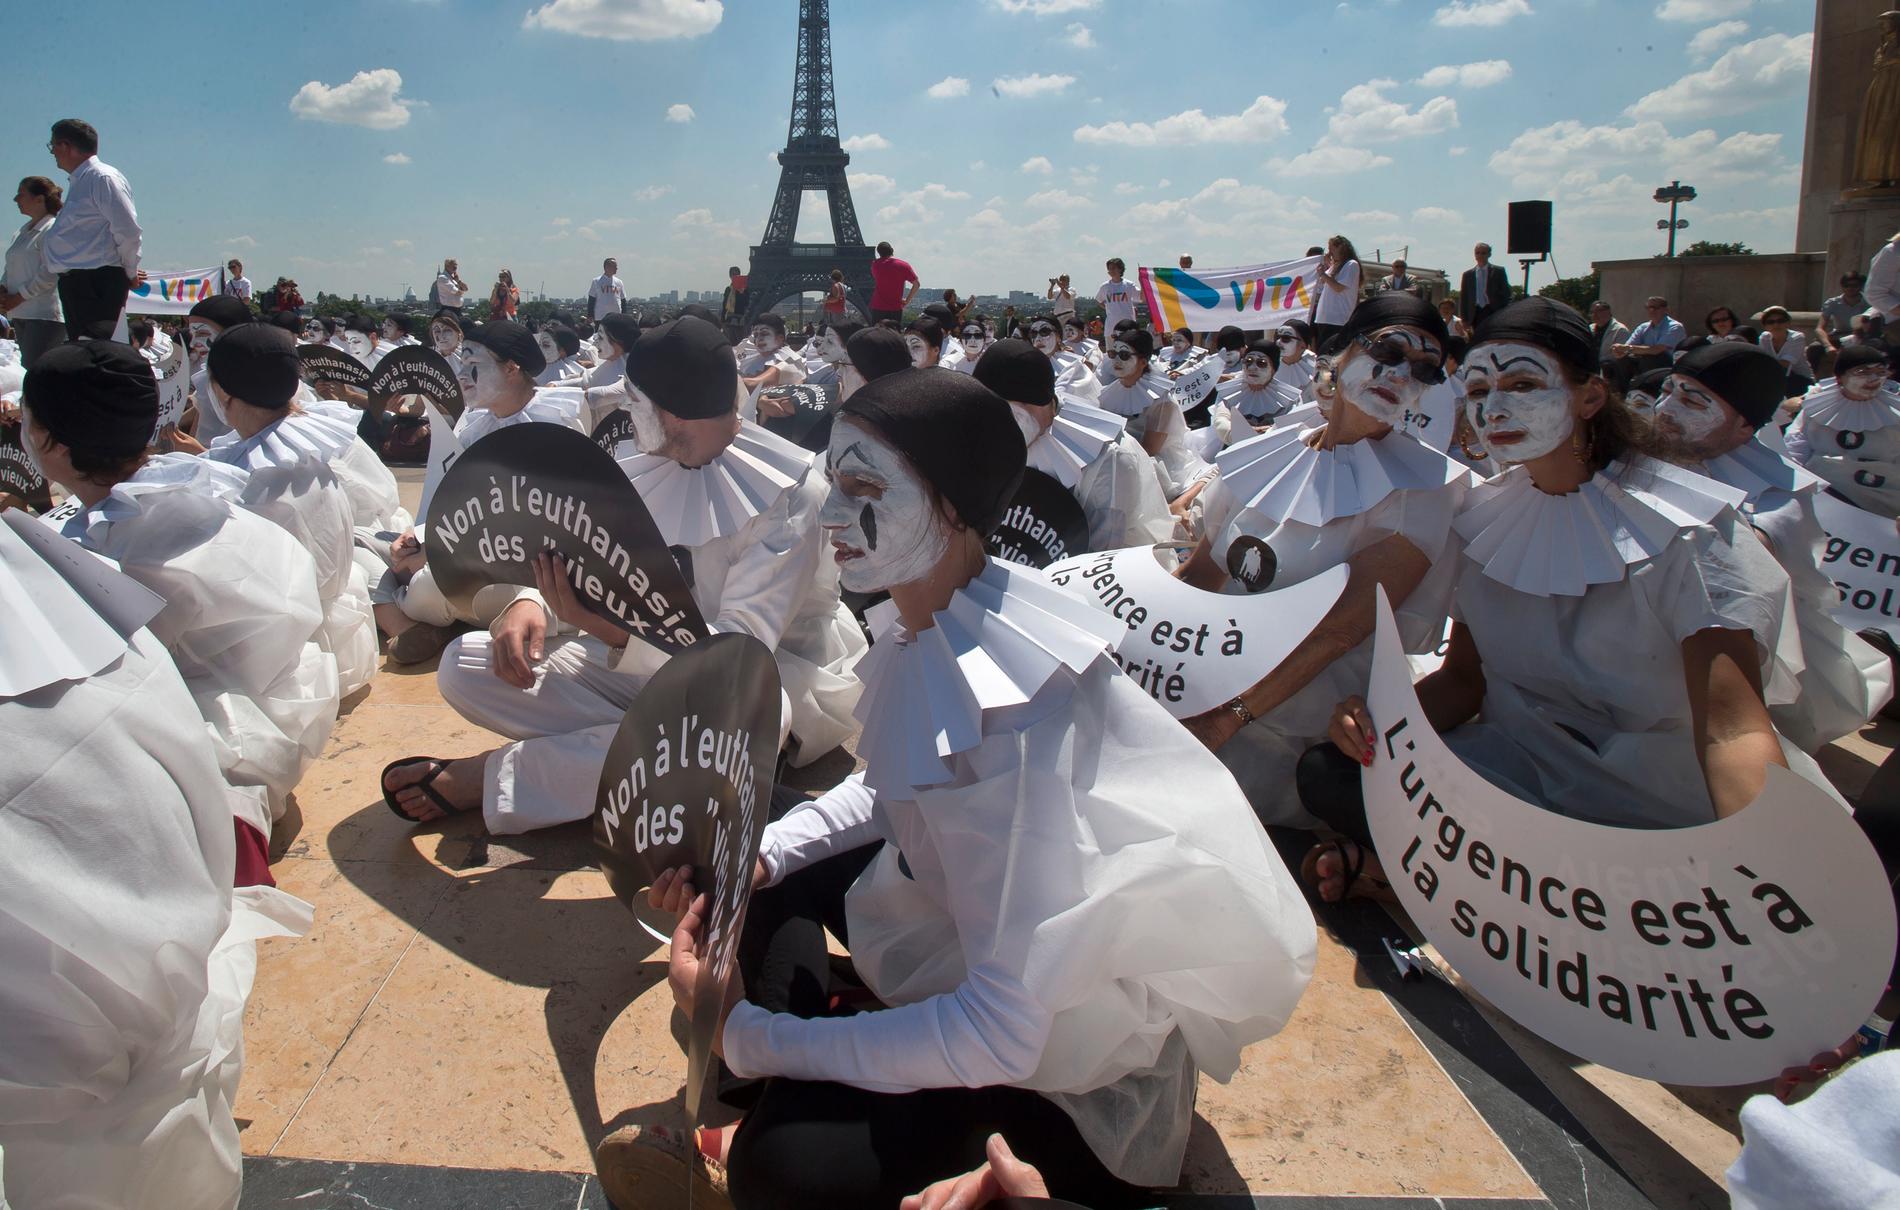 Demonstranter utklädda till mimare håller skyltar med texten "Nej till dödshjälp för 'gamla'" vid en manifestation i Paris. Arkivbild.